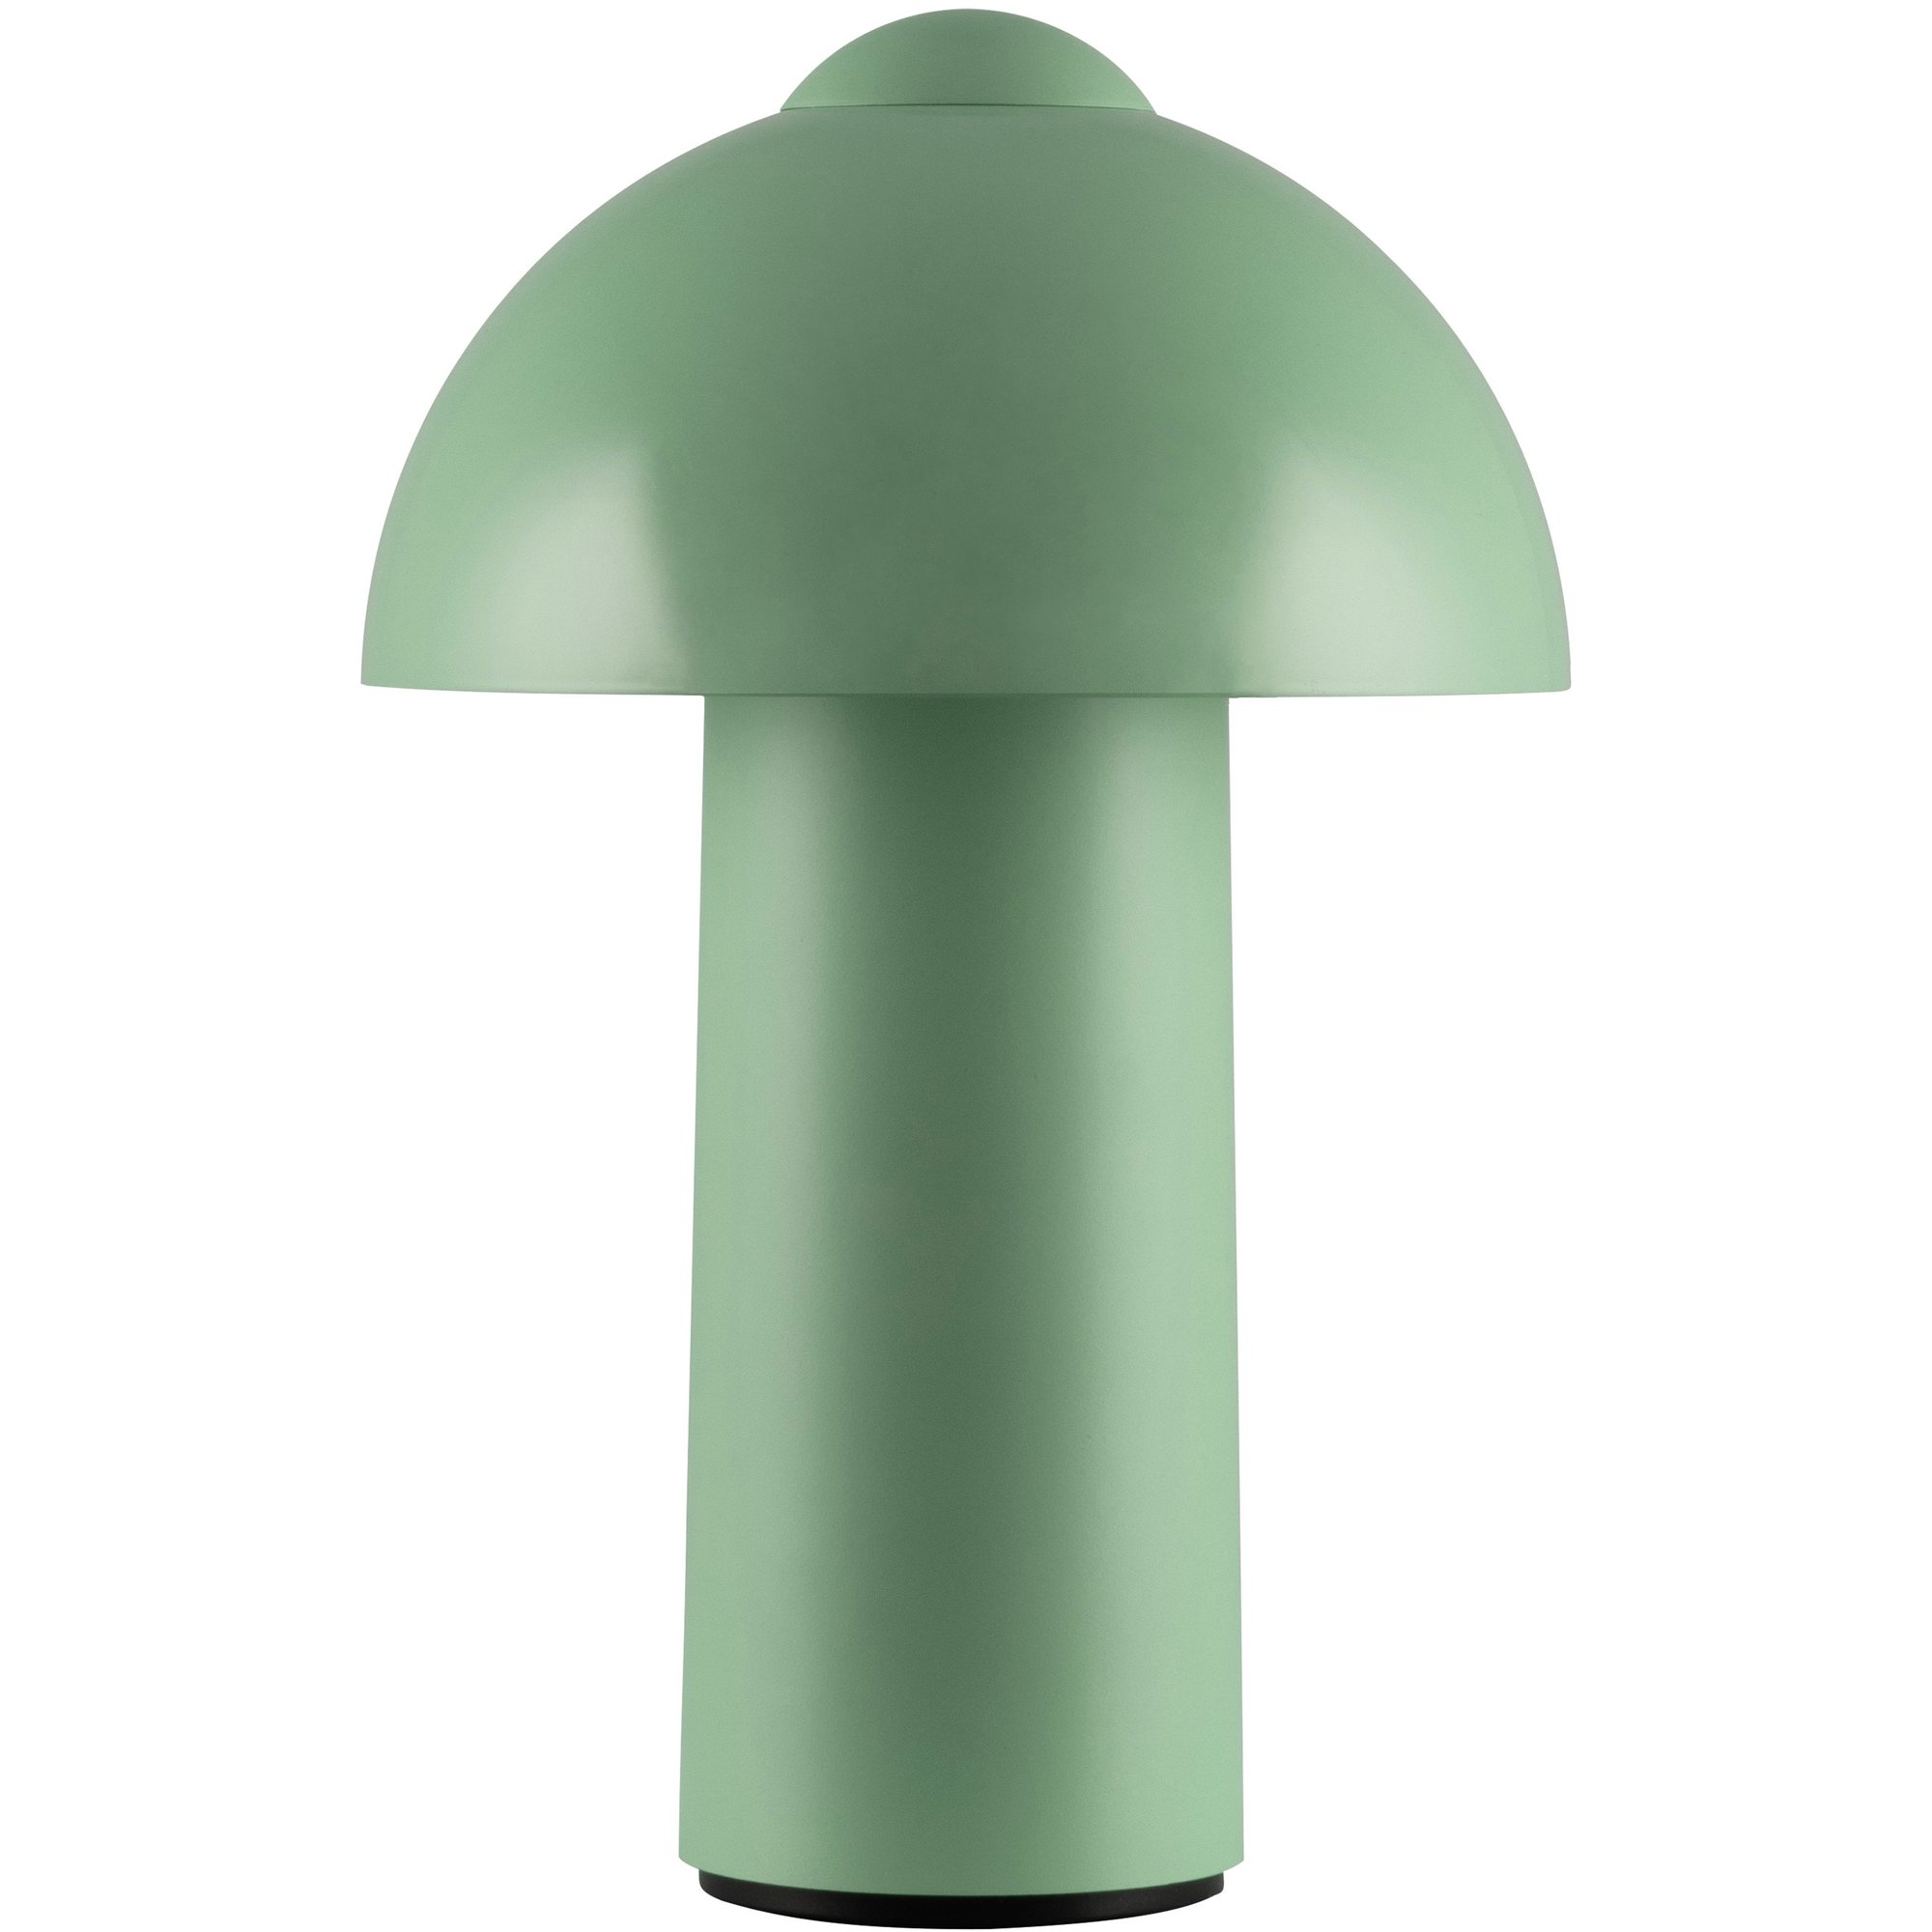 Globen Lighting Buddy IP44 bærbar bordlampe grønn